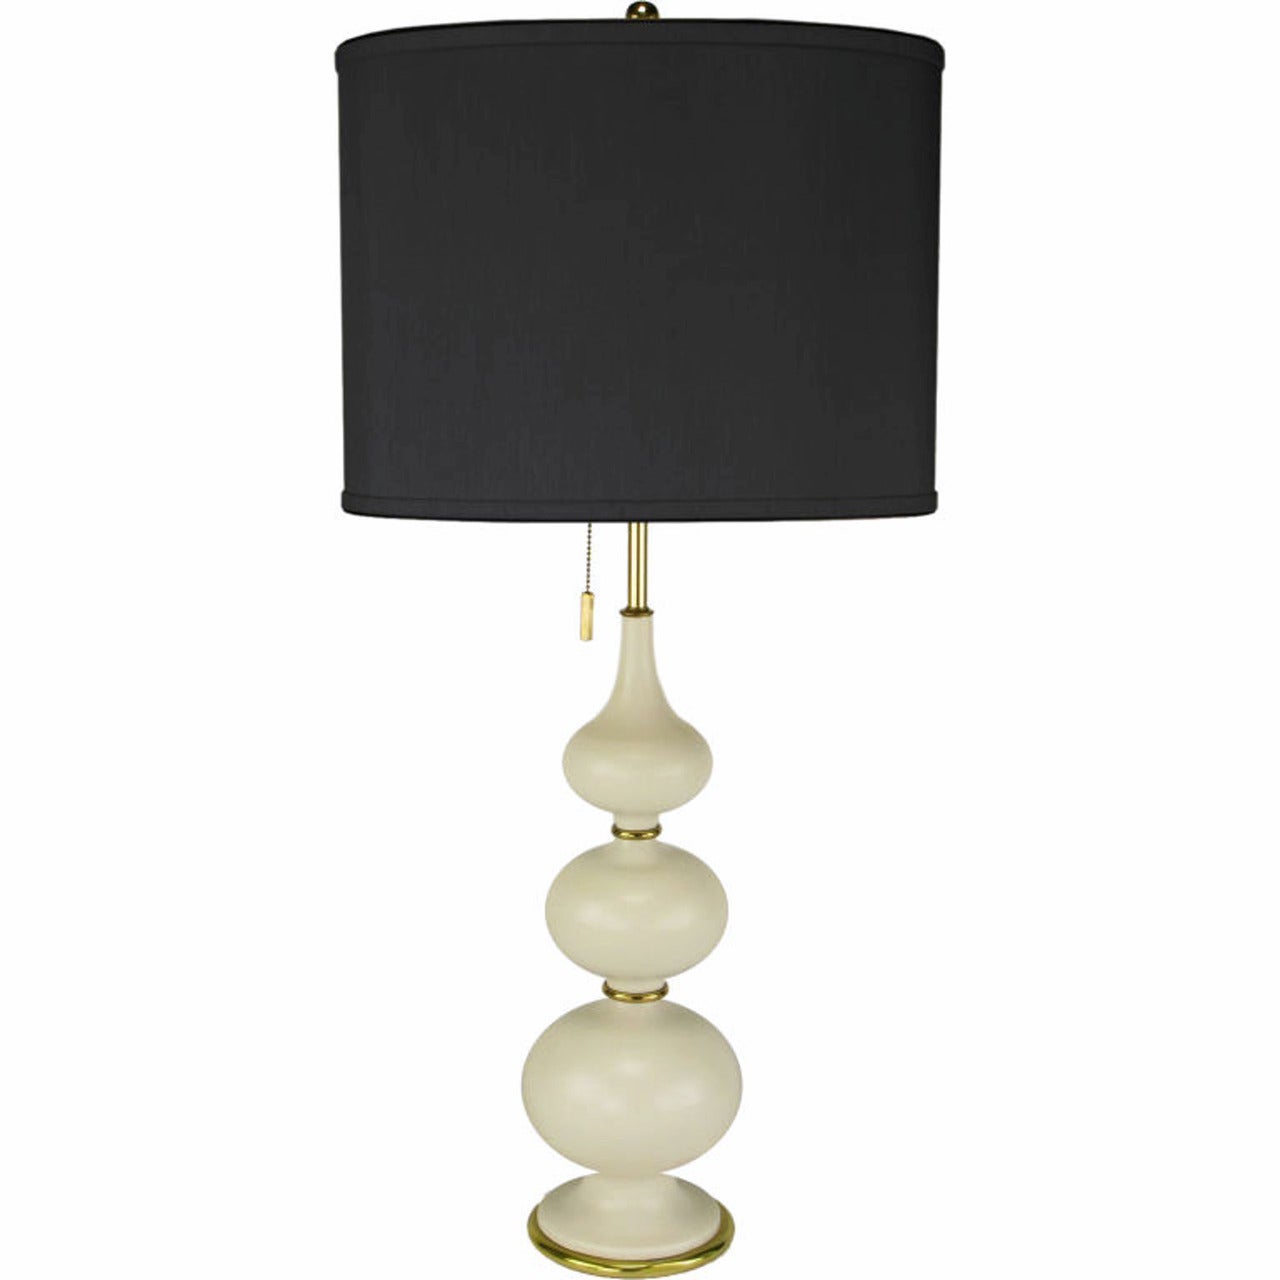 Gerald Thurston for Lightolier Triple Gourd-Form Table Lamp